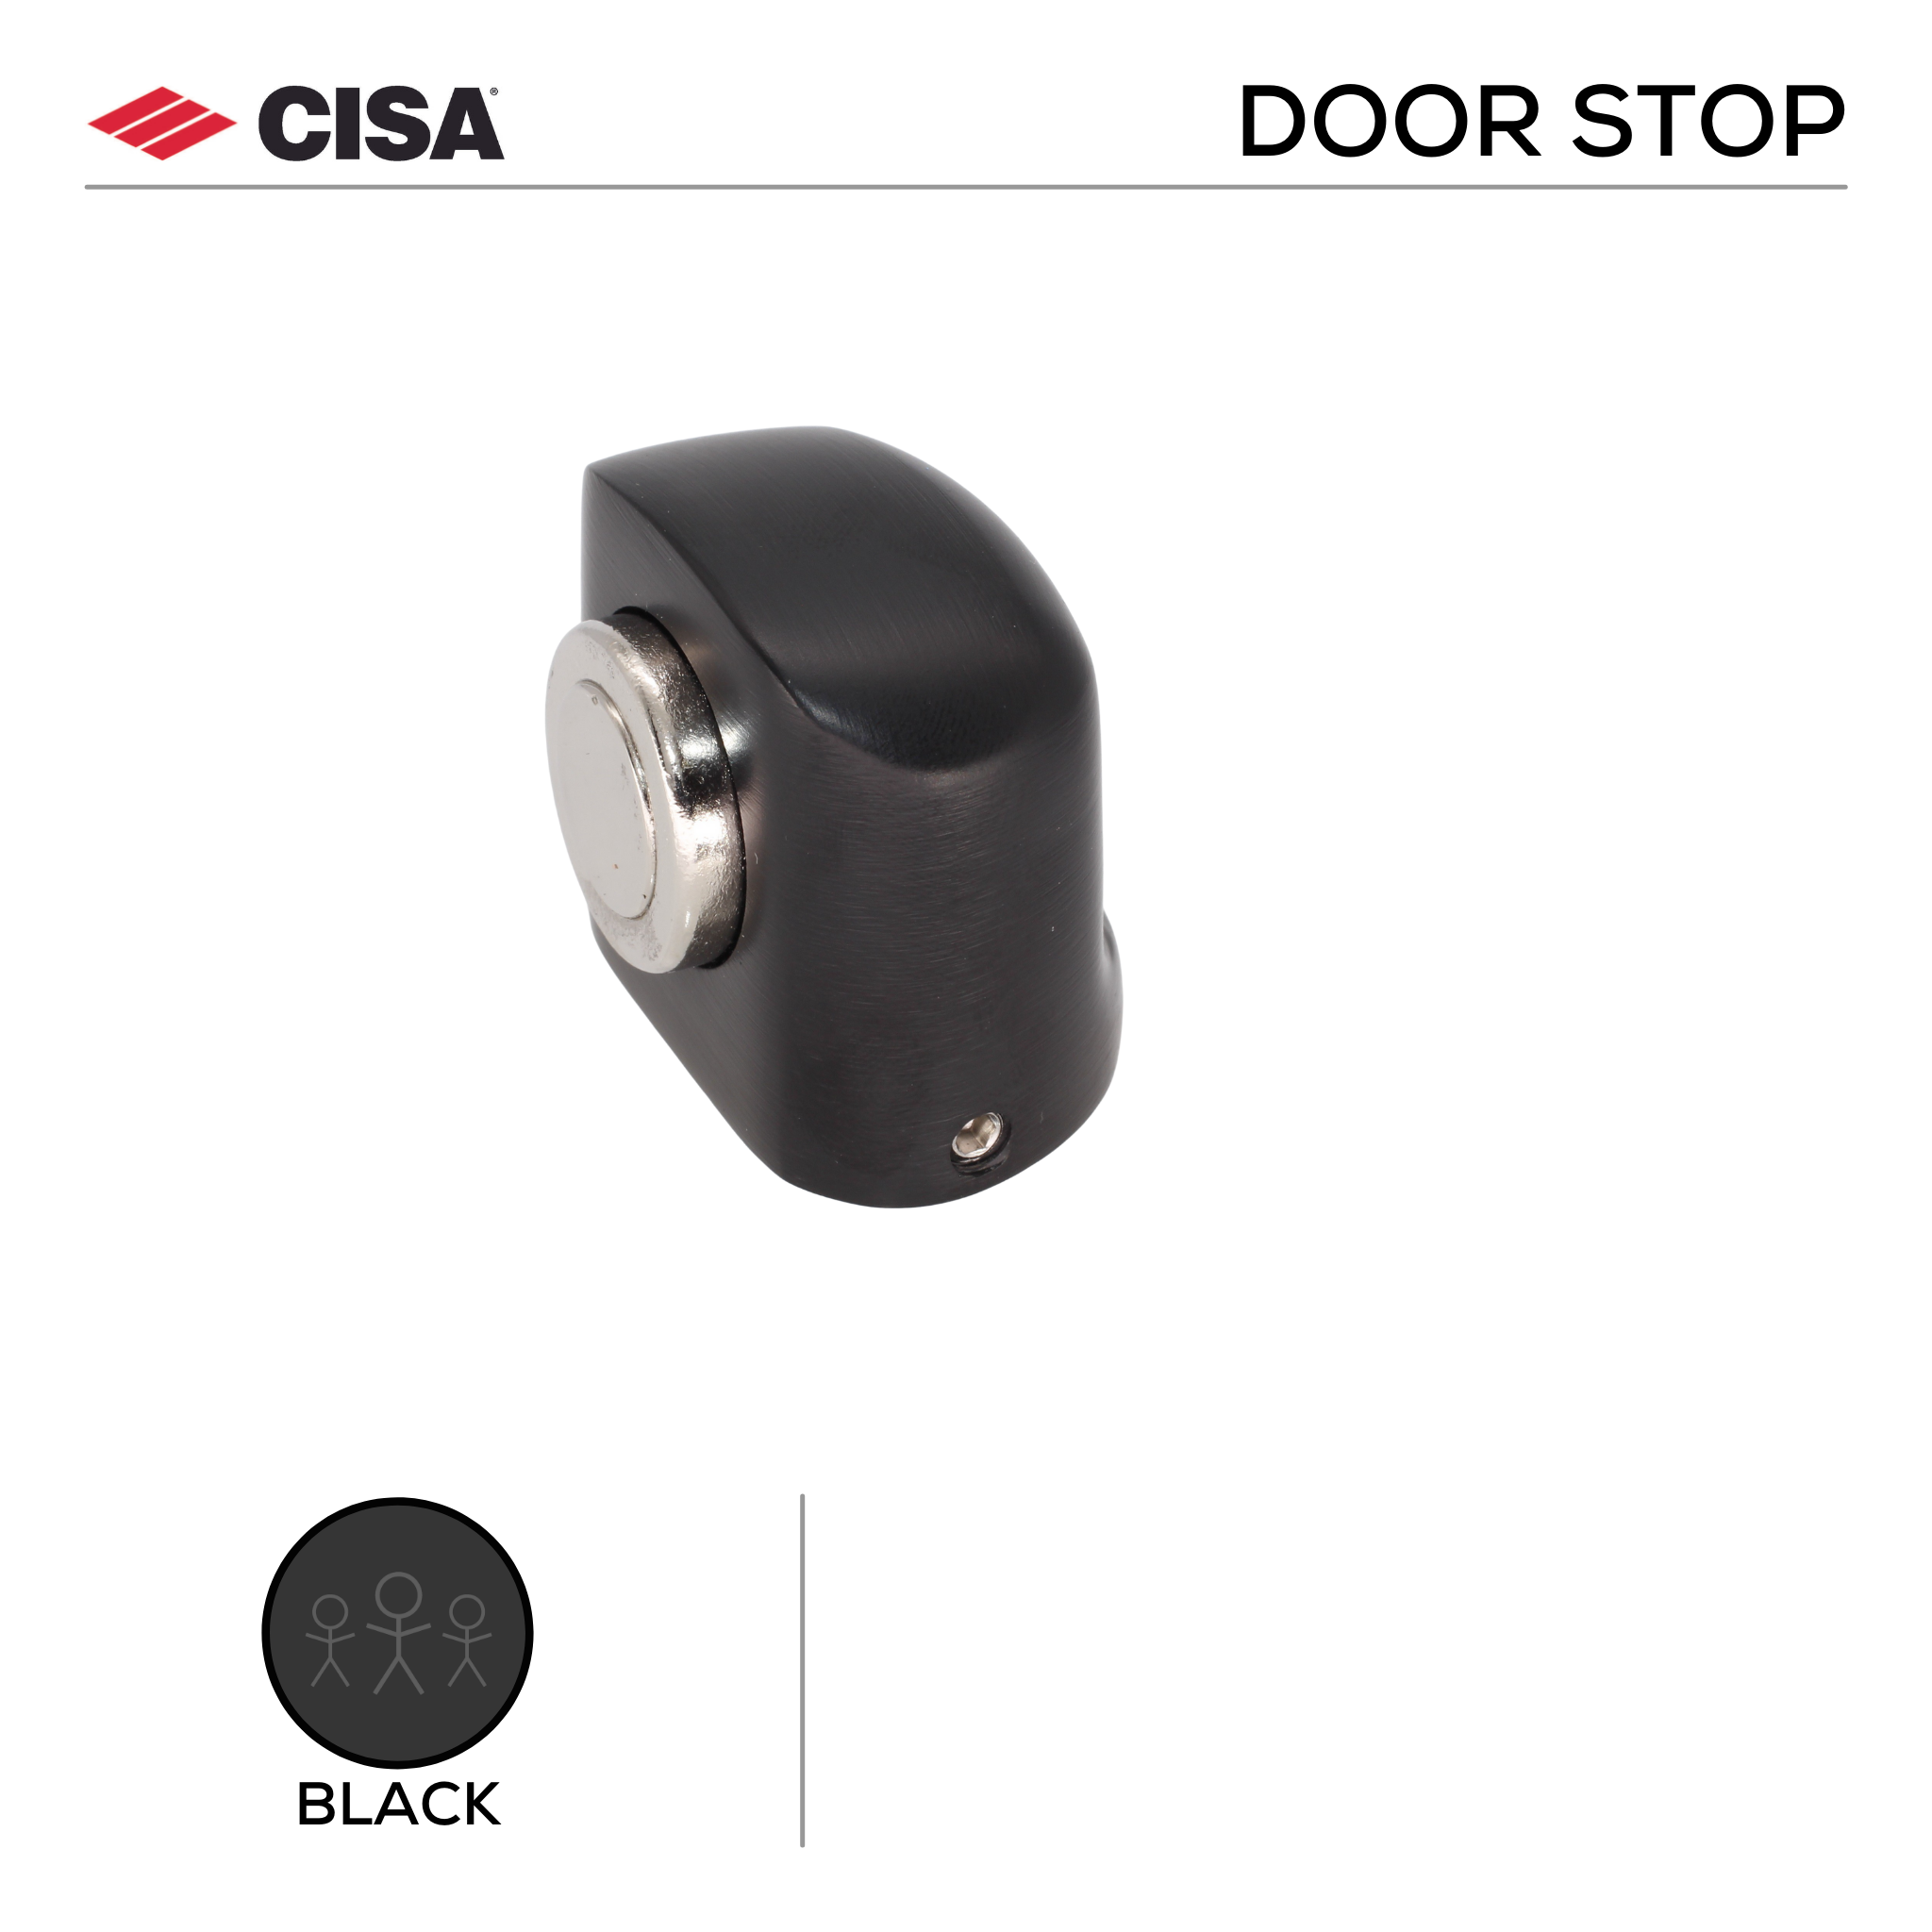 FMDS04.BL, Door Stop, Floor Mounted, Magnetic, 38mm (l) x 45mm (w), Black, CISA